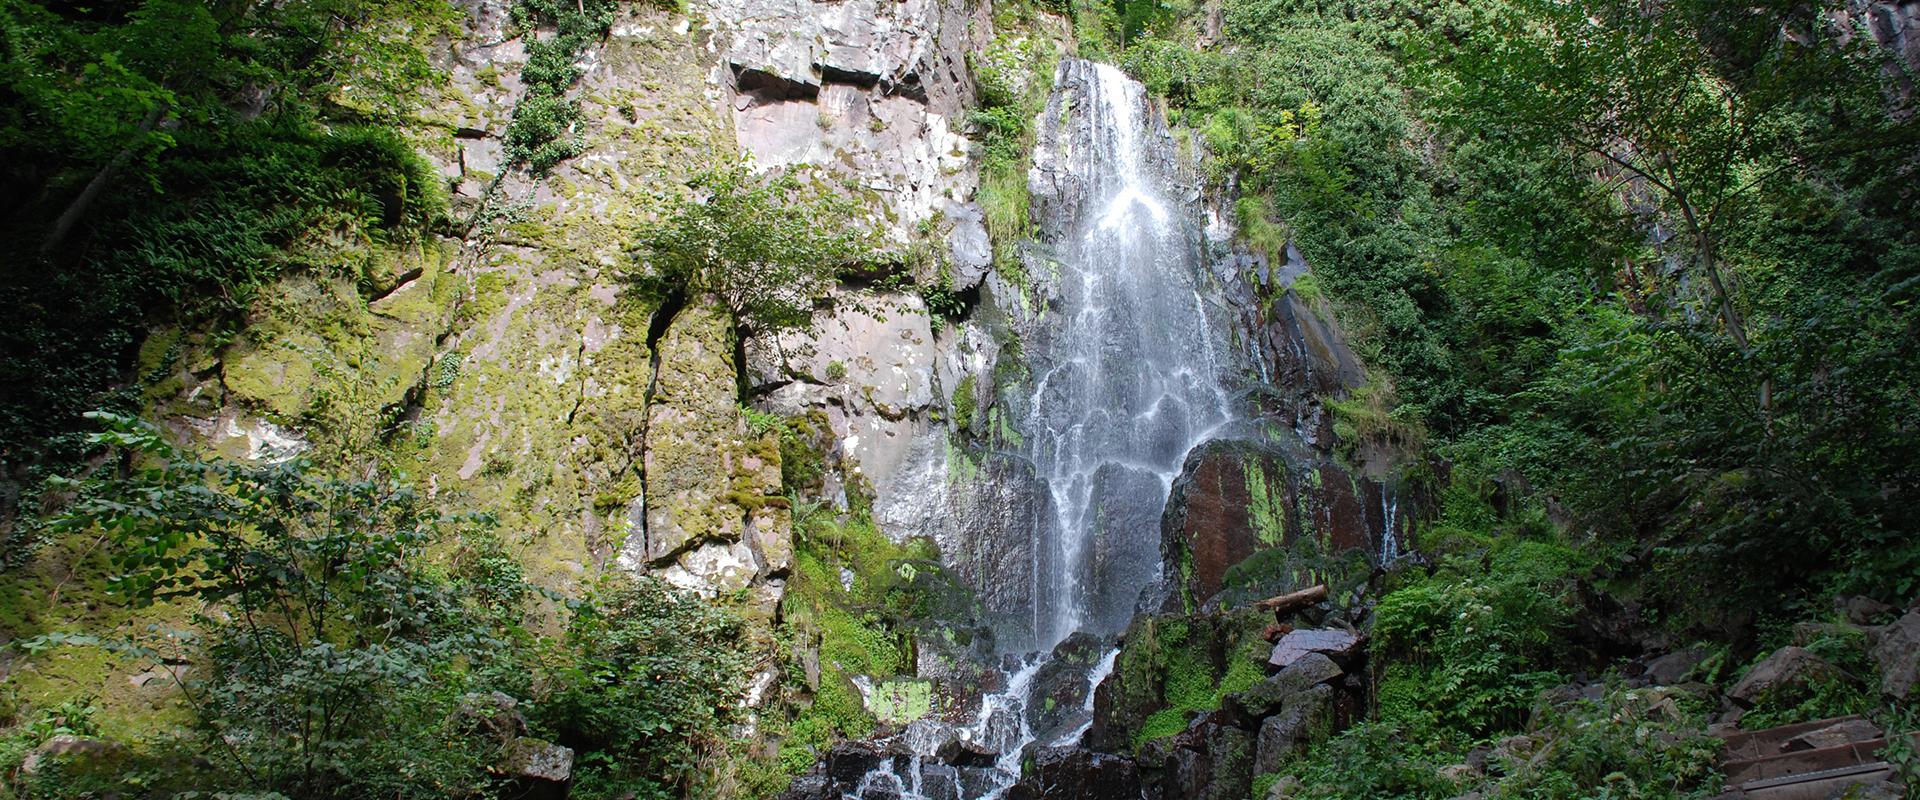 La cascade du Nideck, Bas-Rhin